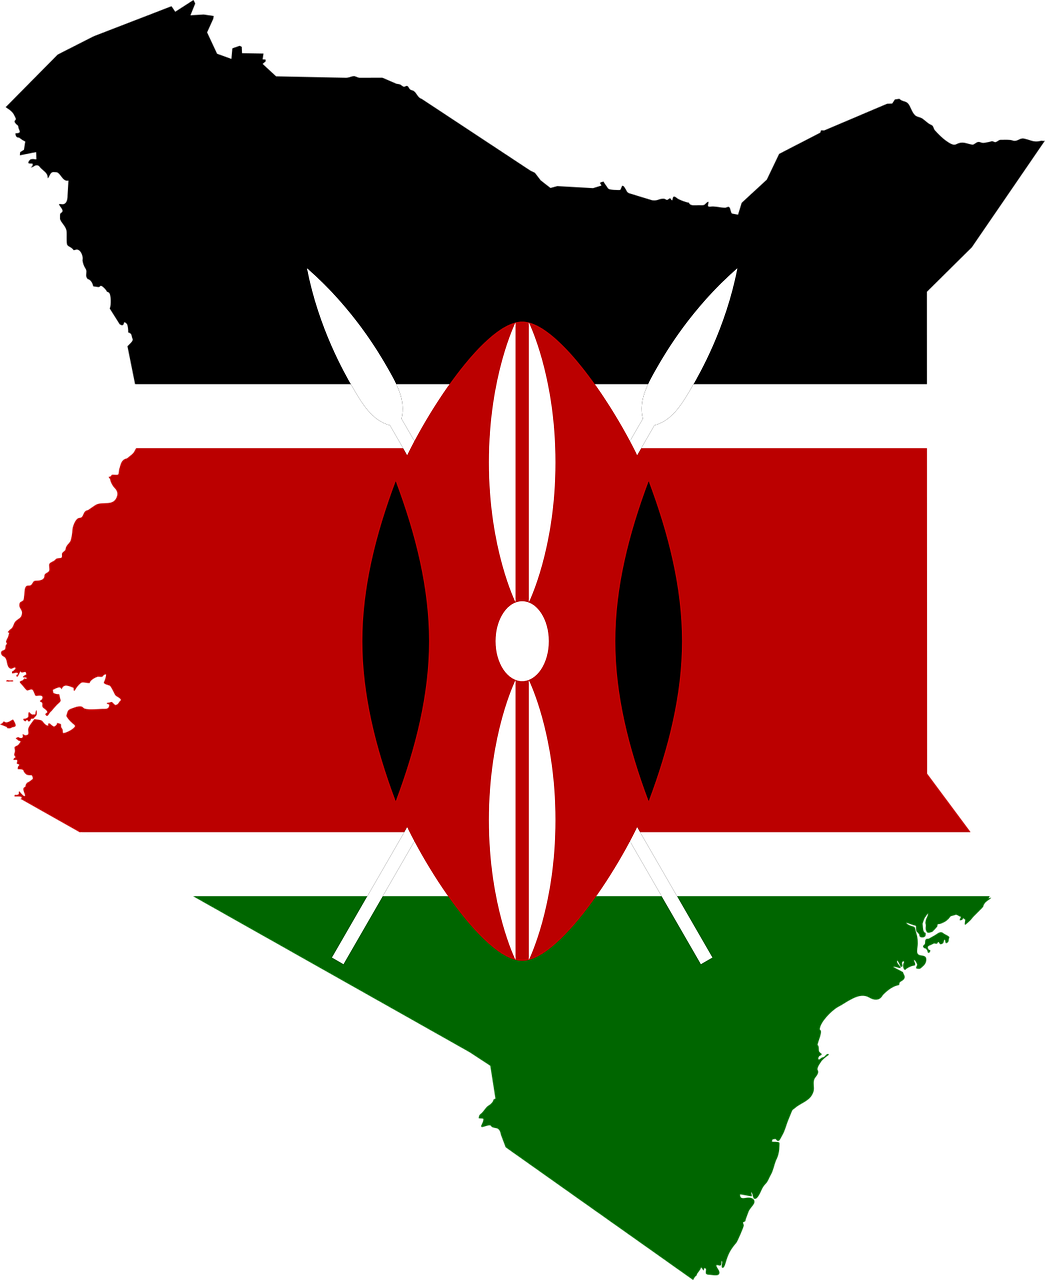 싱글오리진 케냐 커피 생산국의 국기와 국토 모양